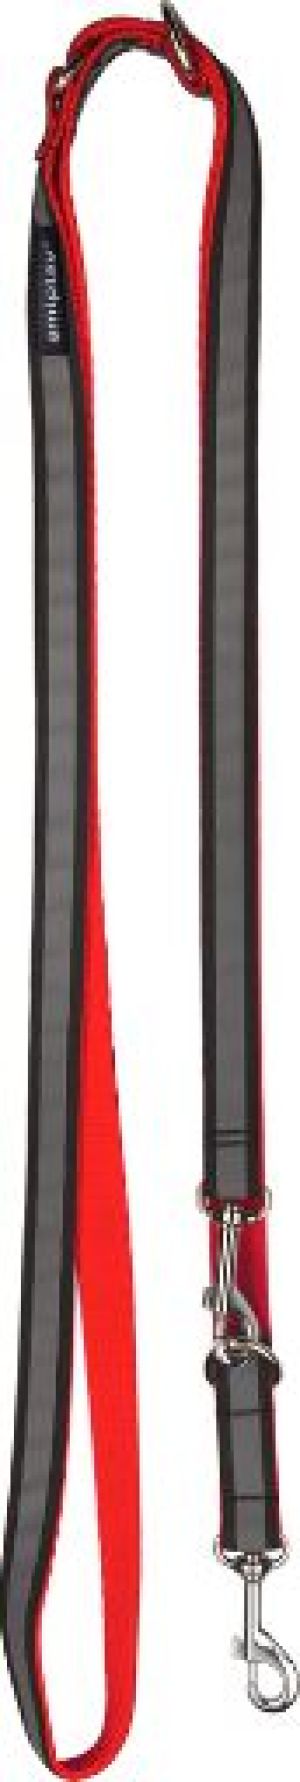 Ami Play Smycz regulowana 6 in 1 Shine L 100-200 x 2cm czerwony 1